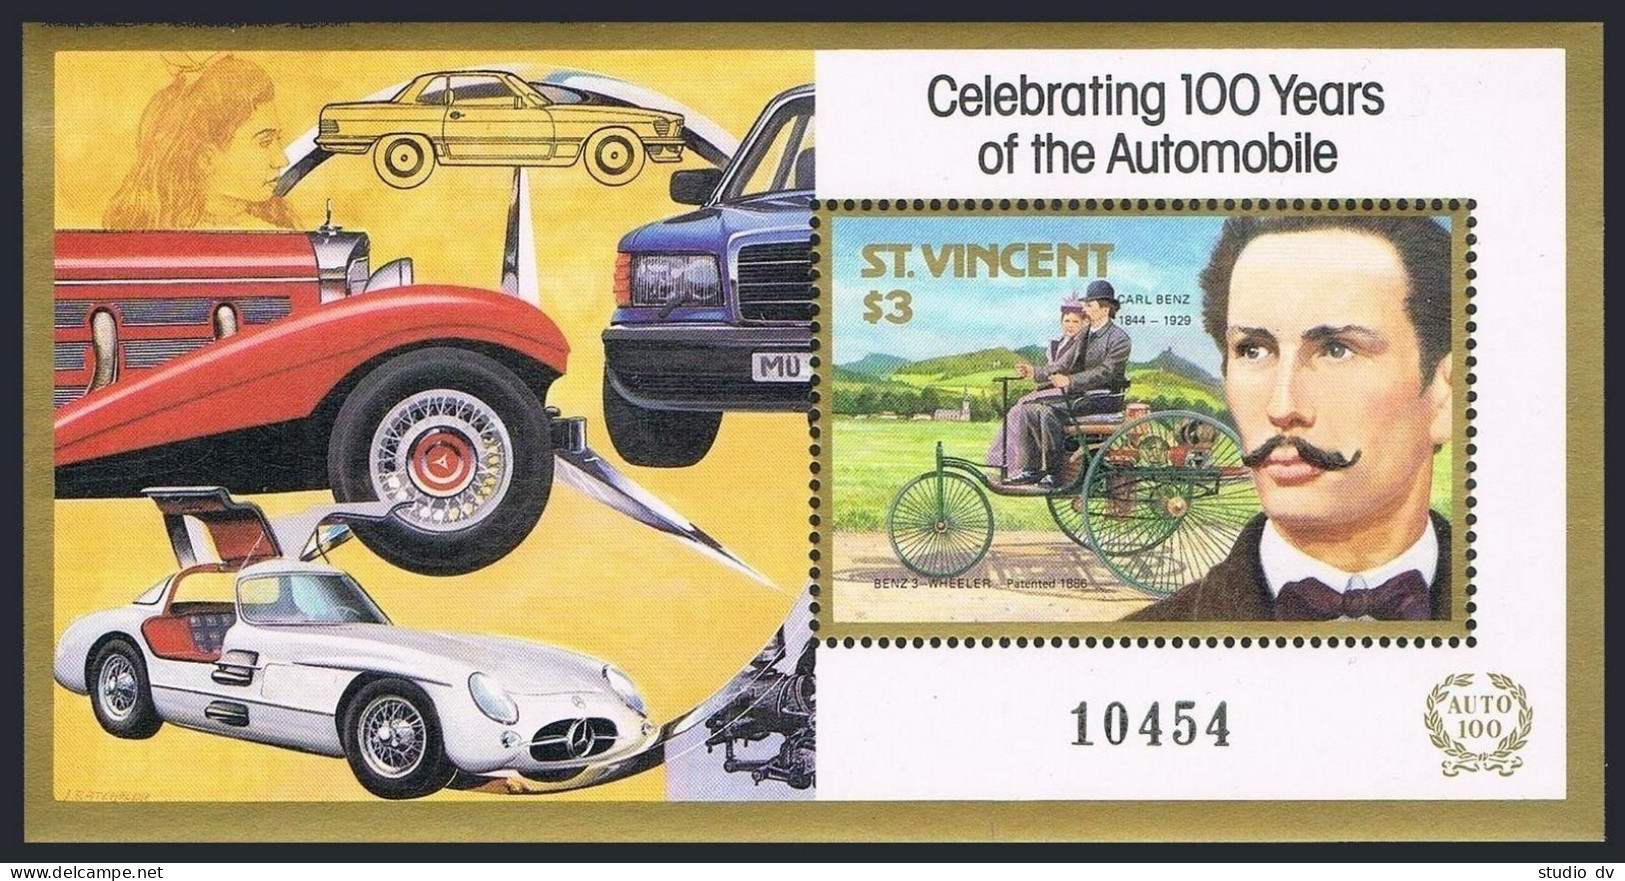 St Vincent 1048-1051sheets,MNH.Mi Bl.50-53. Automotive Pioneers & Vehicles,1987. - St.Vincent (1979-...)